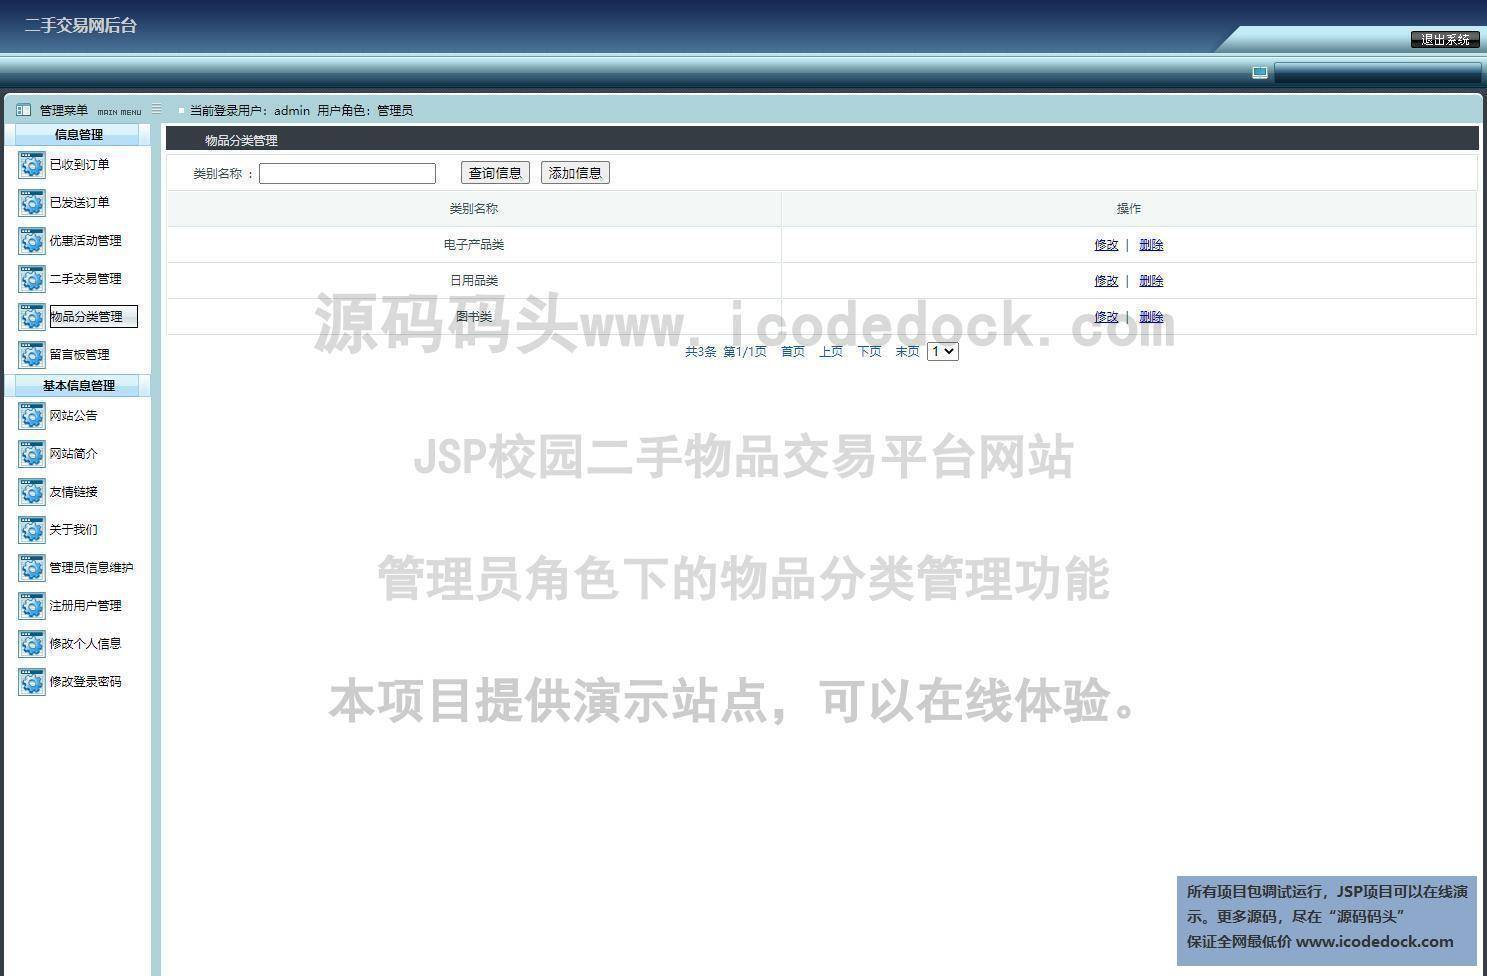 源码码头-JSP校园二手物品交易平台网站-管理员角色-物品分类管理